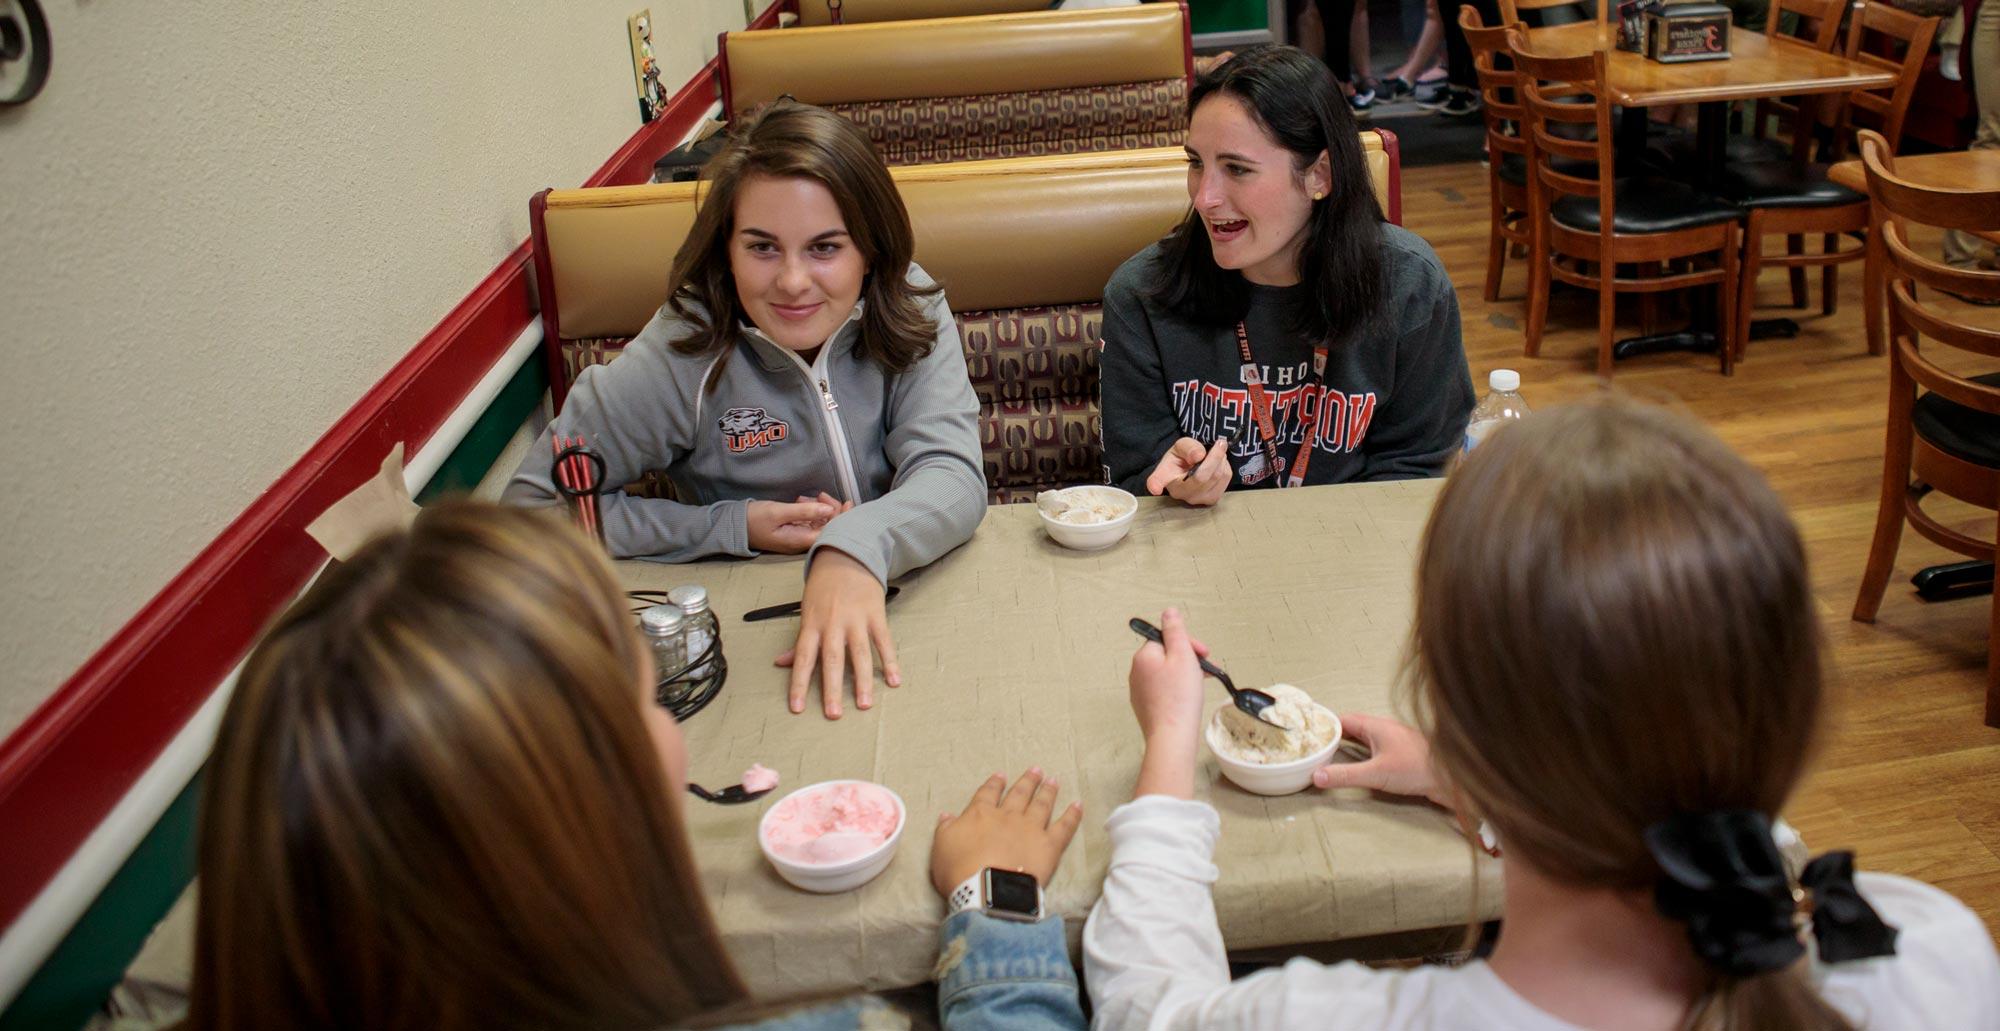 从左, 药学一年级学生丹尼斯·威廉姆斯和一年级学生伊莎贝拉·奥罗菲诺在三兄弟披萨店边聊天边吃冰淇淋. 